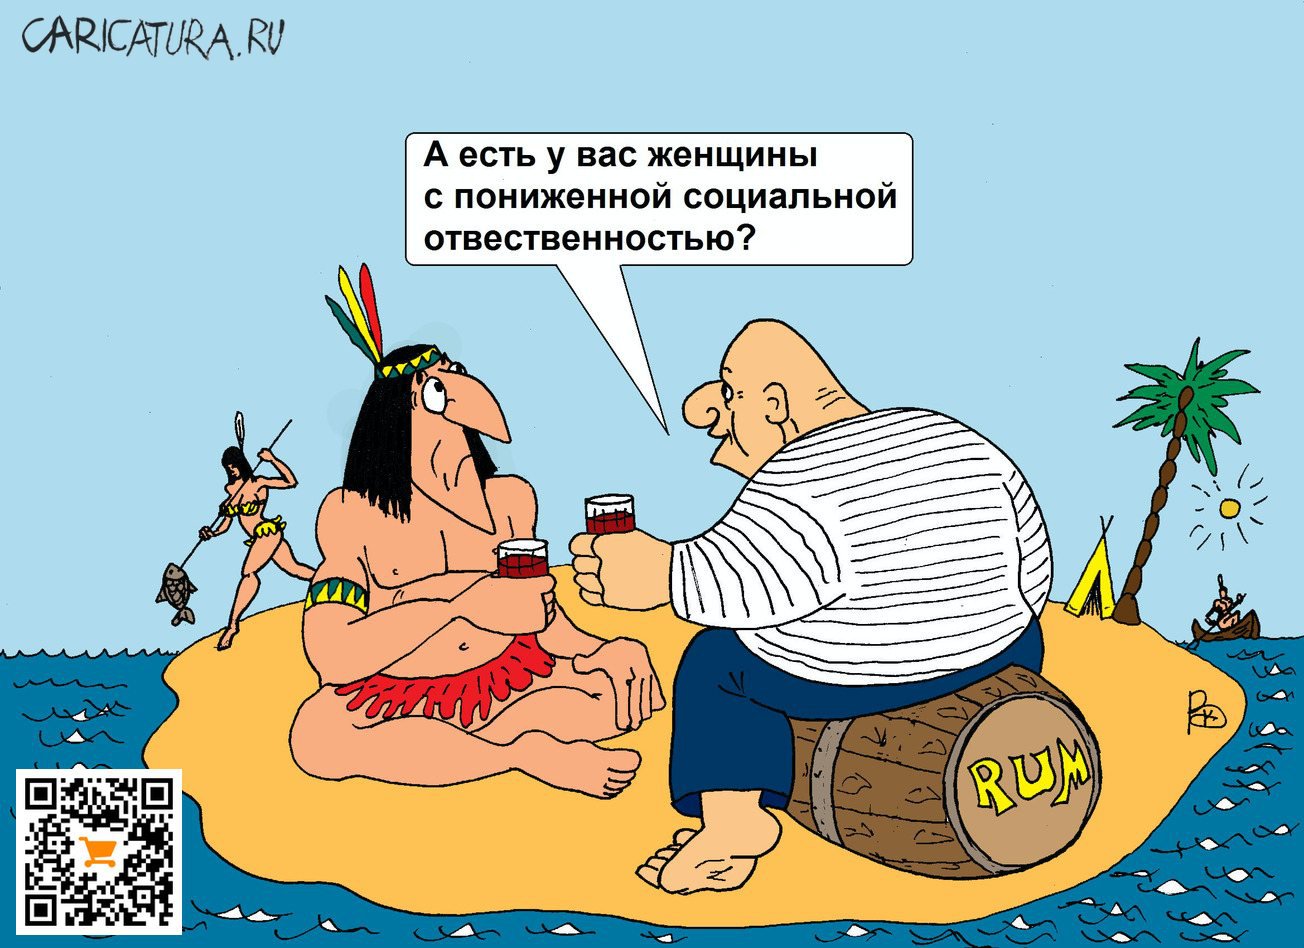 Карикатура "На острове", Валерий Каненков